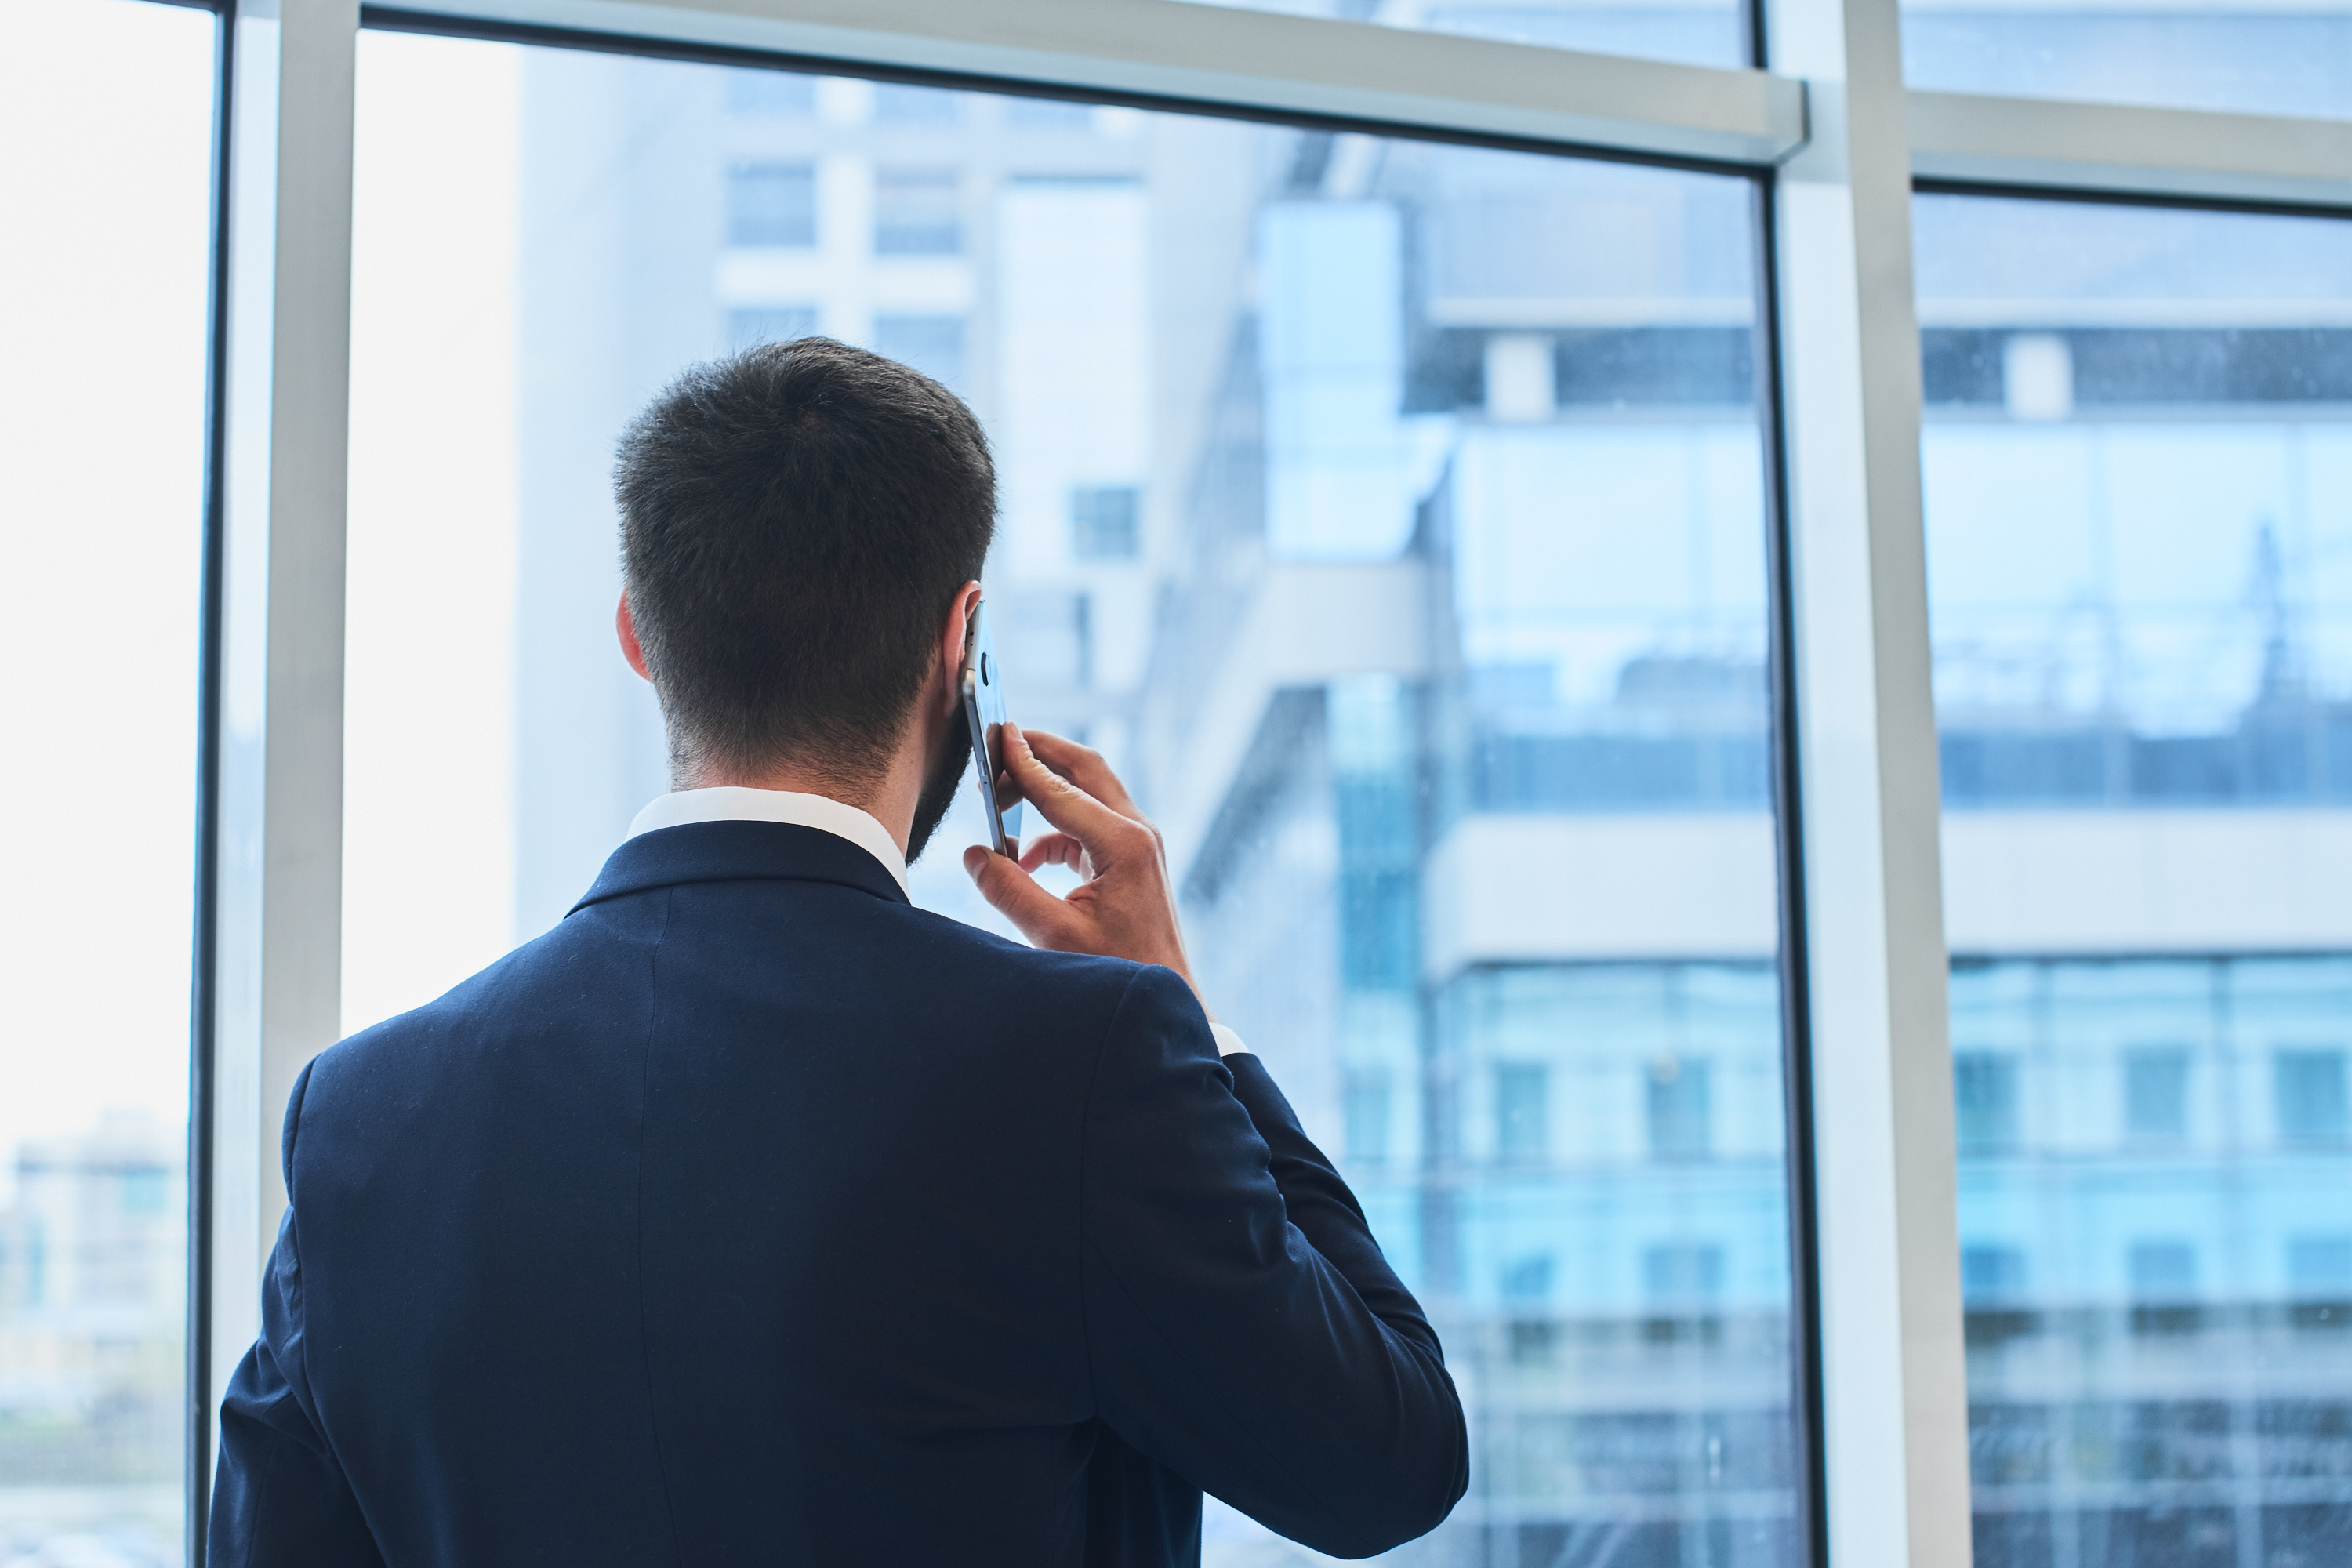 Hablando por el móvil y mirando por la ventana. | Fuente: Shutterstock